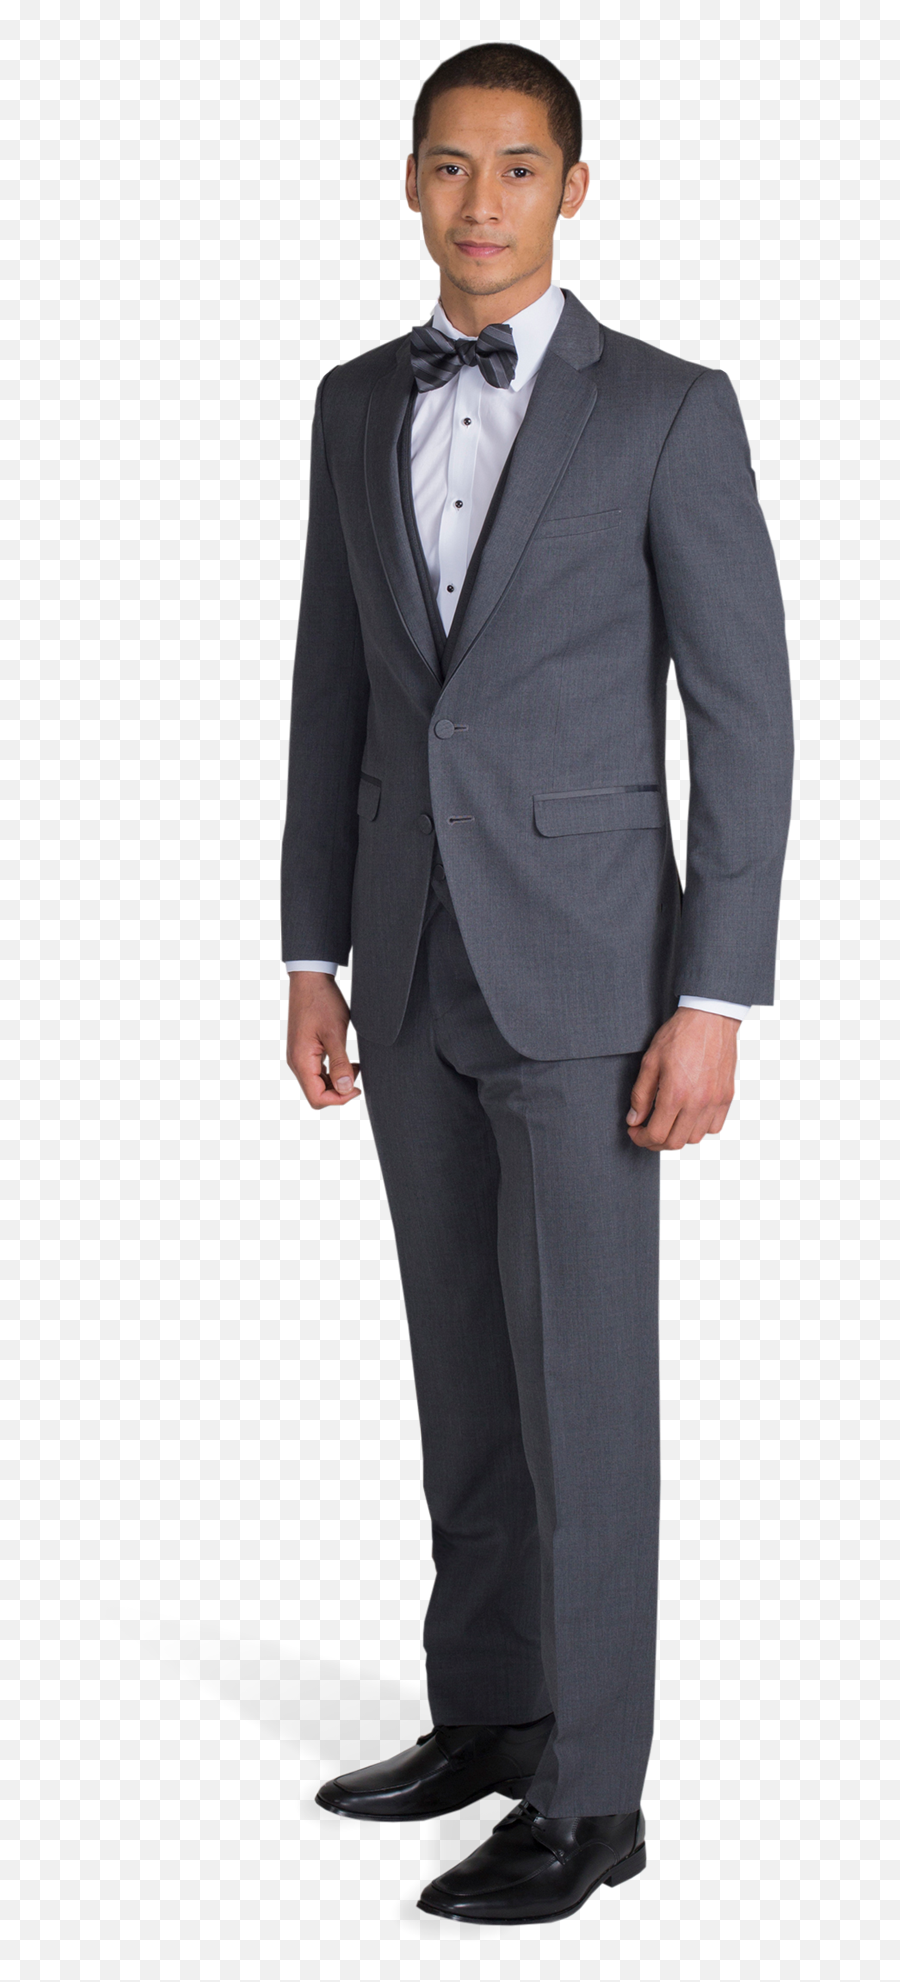 Charcoal Grey Suit By Allure Men Online Rental - Suit Png,Man In Suit Transparent